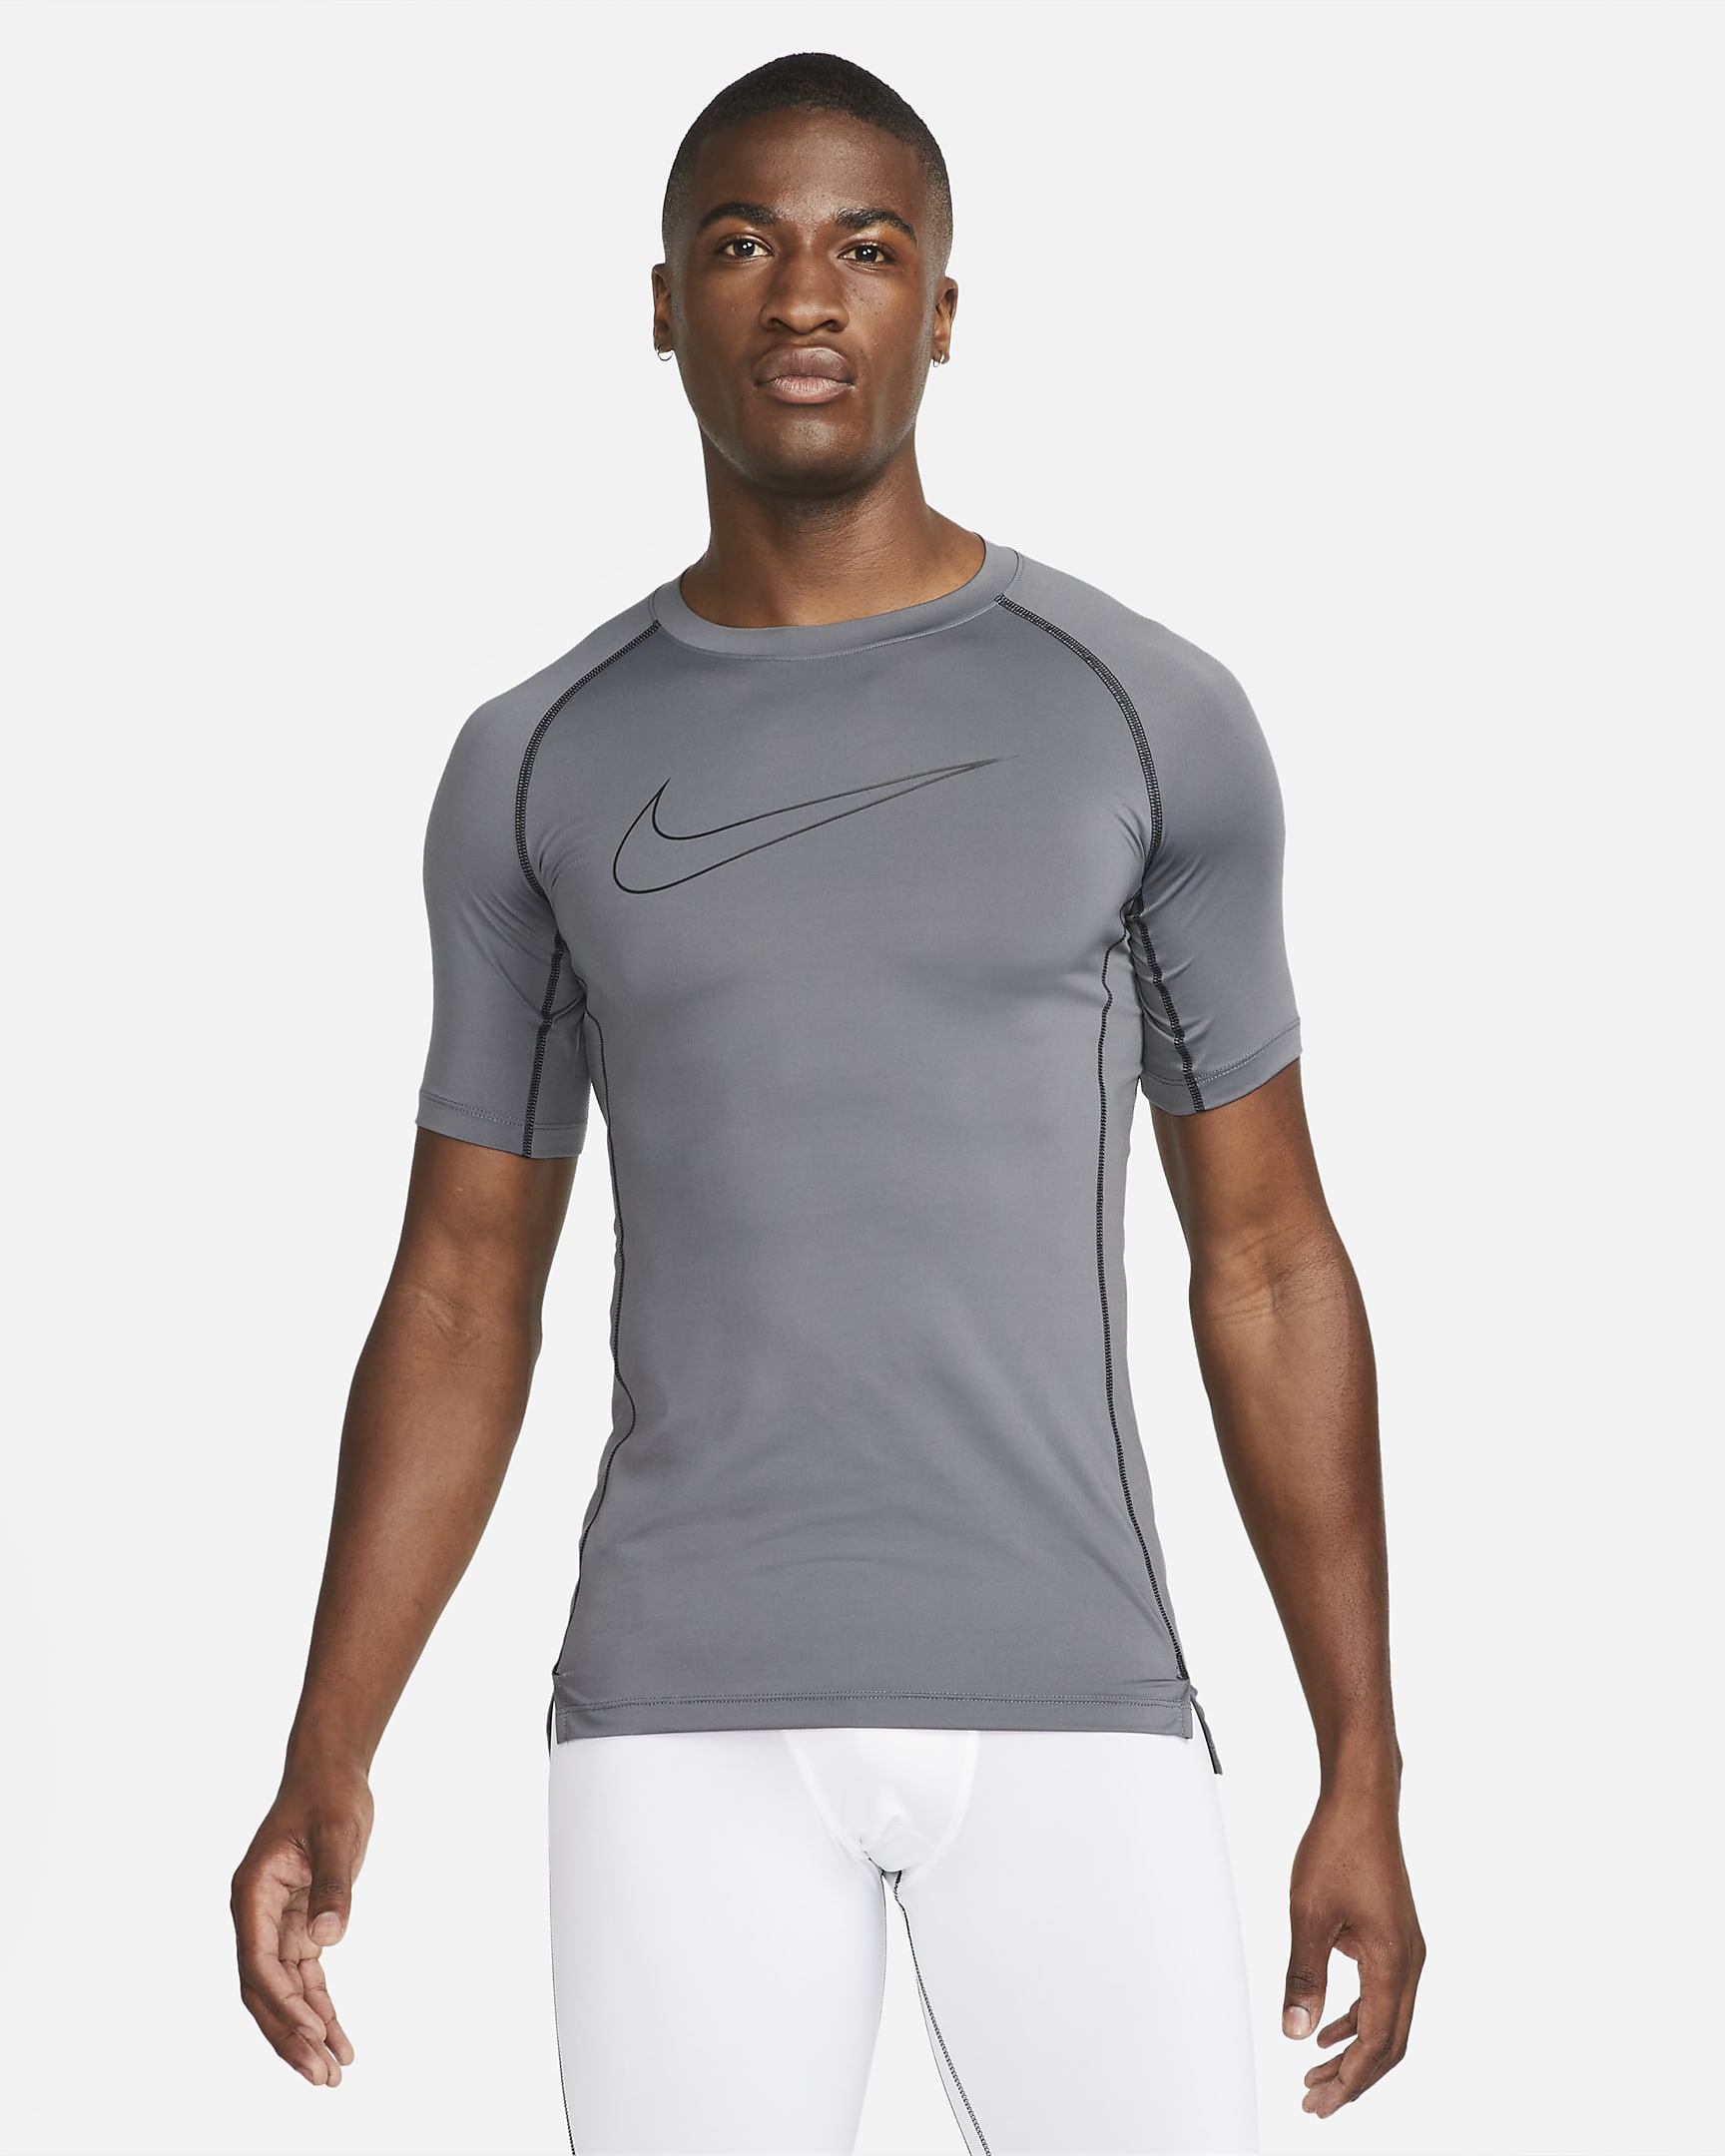 Nike Pro Dri-FIT Men's Tight-Fit Short-Sleeve Top. Nike SG